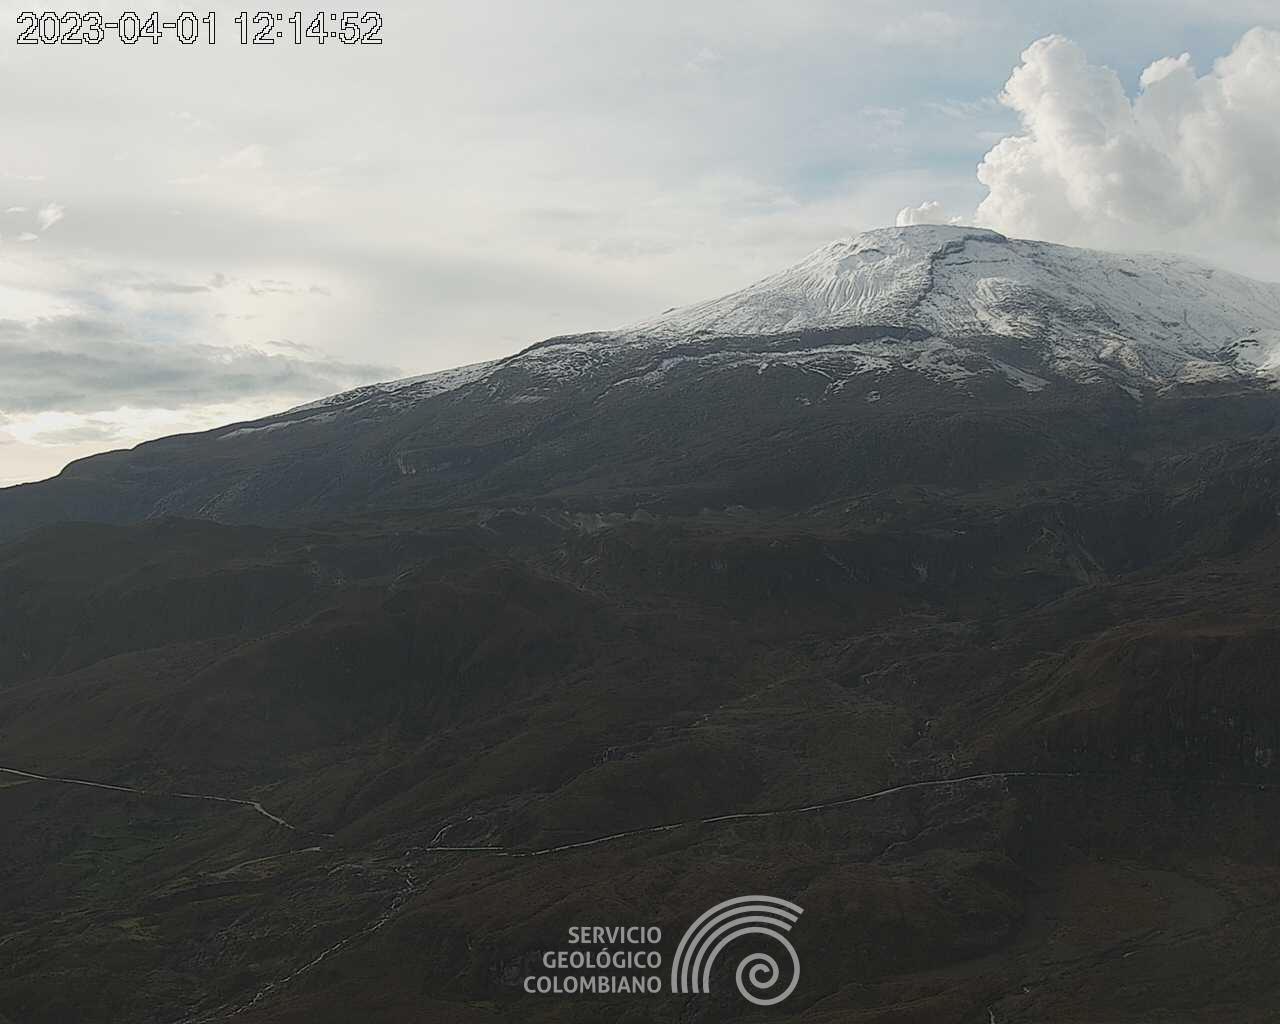 Alerta Naranja en el volcán Nevado del Ruiz continúa activa 5